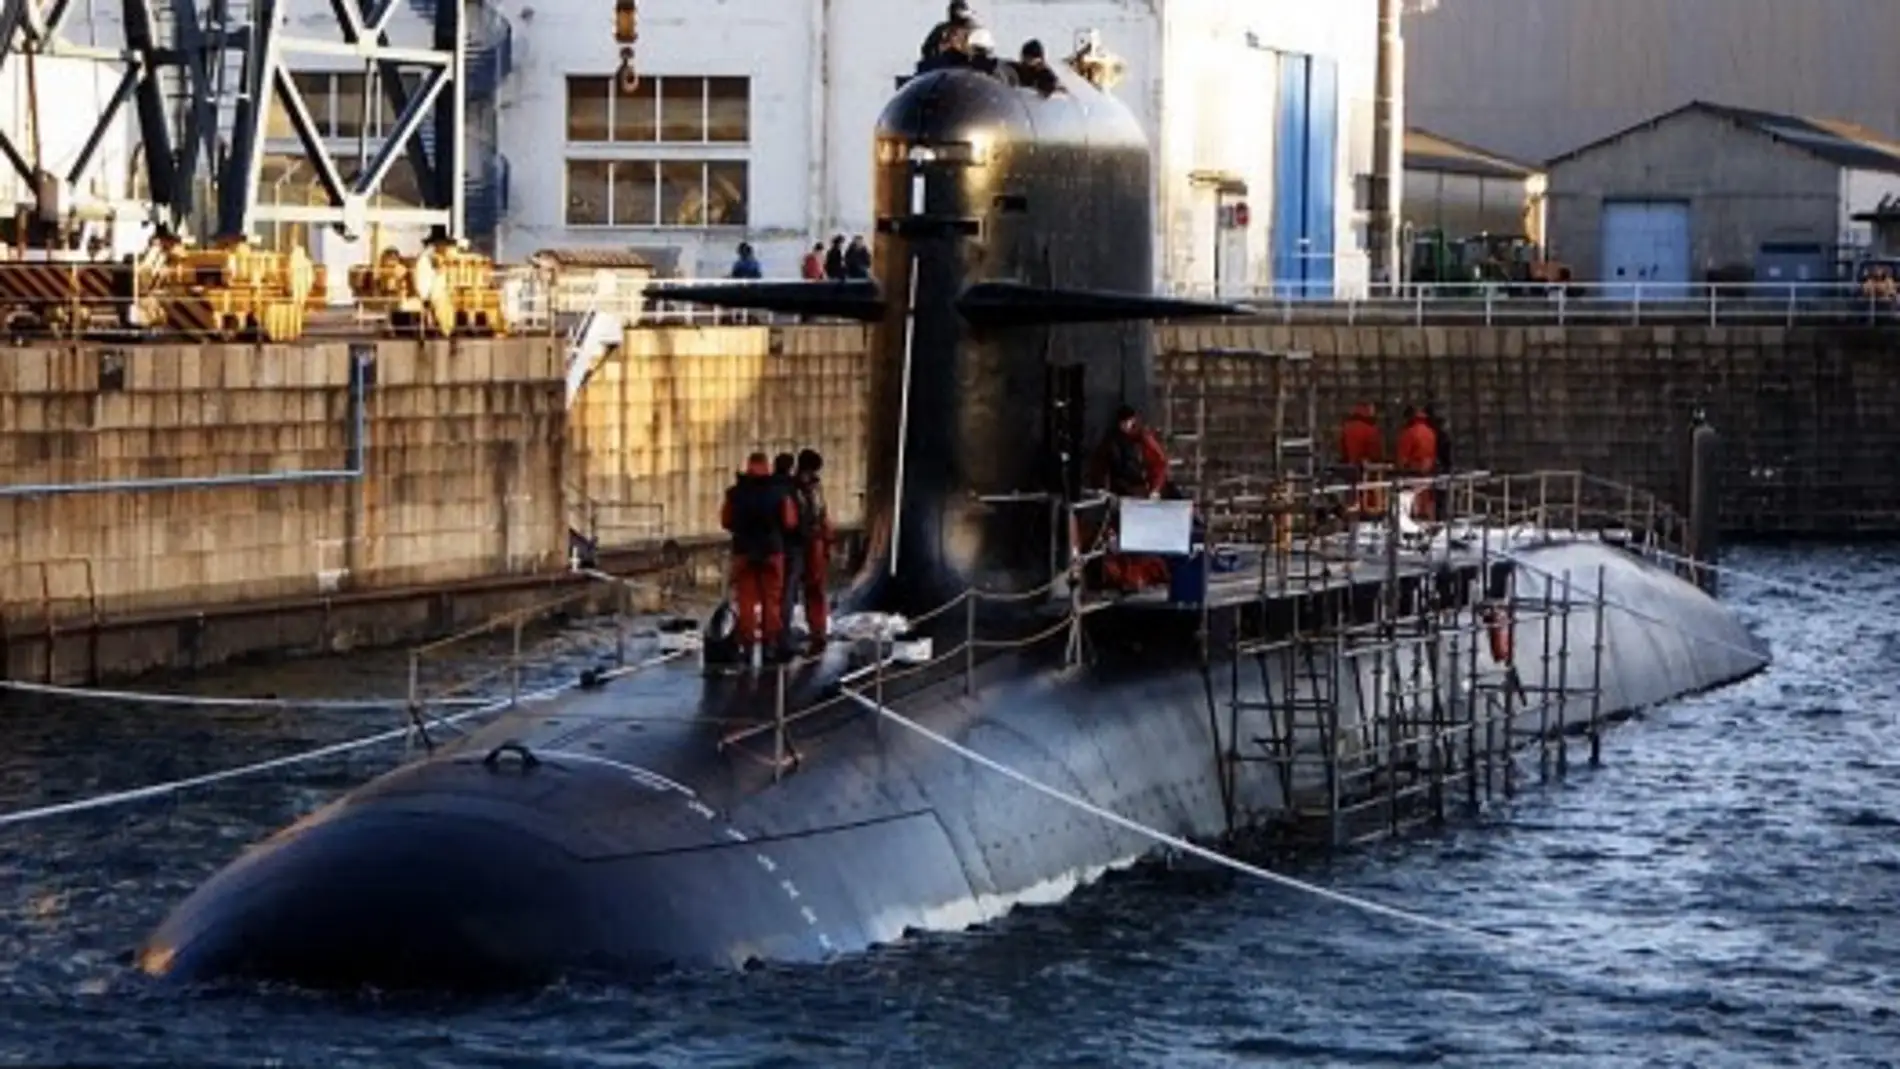 Submarino S80